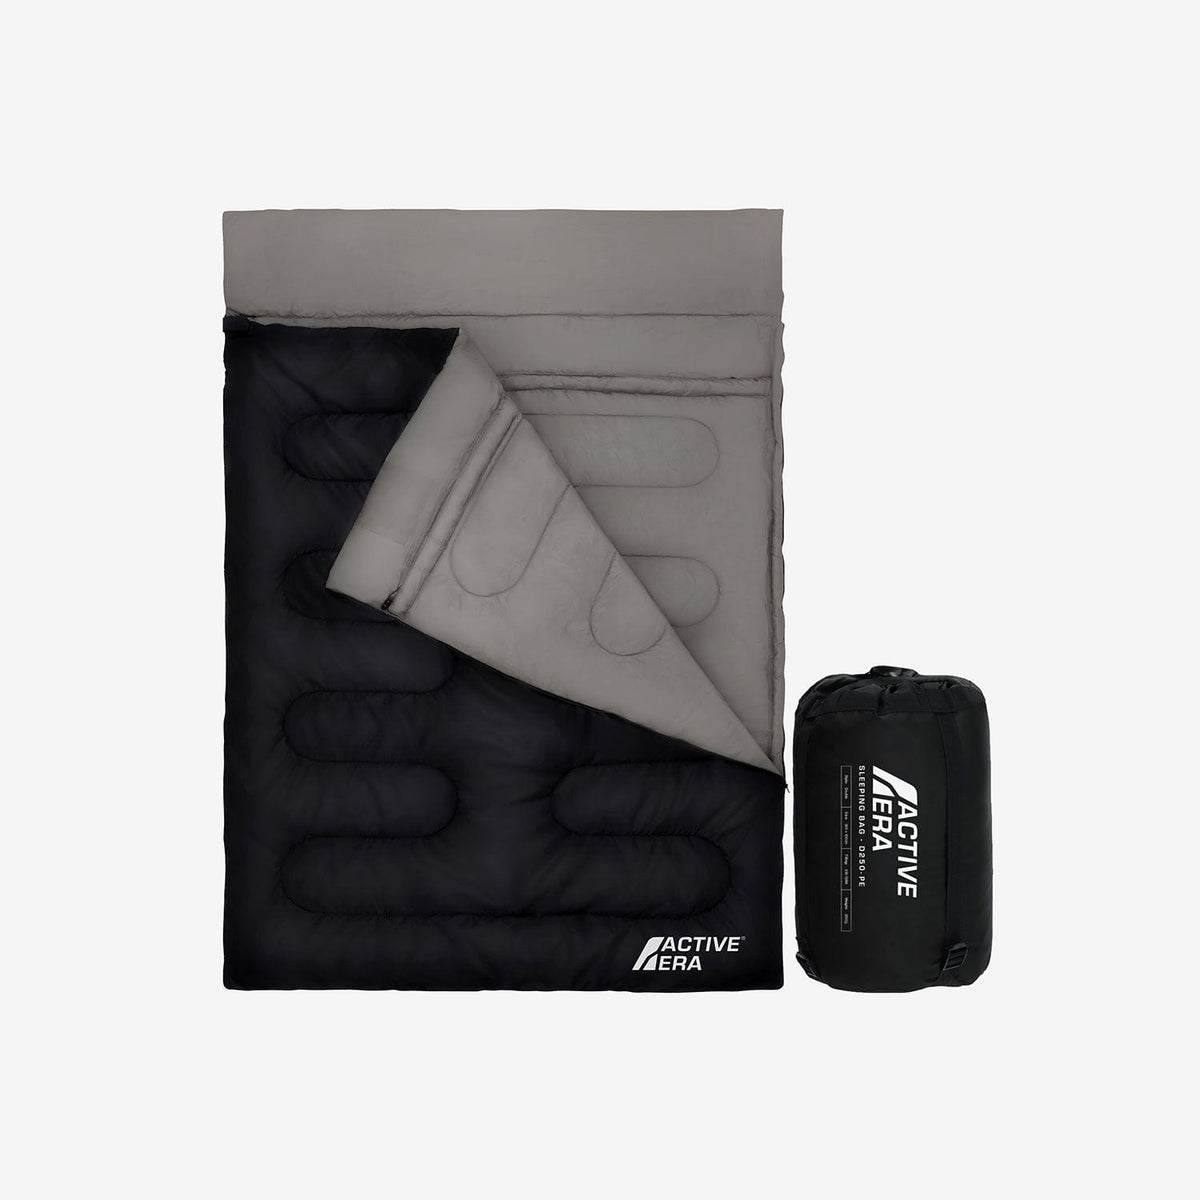 Saco de dormir de sobre ligero y cálido de primera calidad (200 g/m²), Entrega gratuita